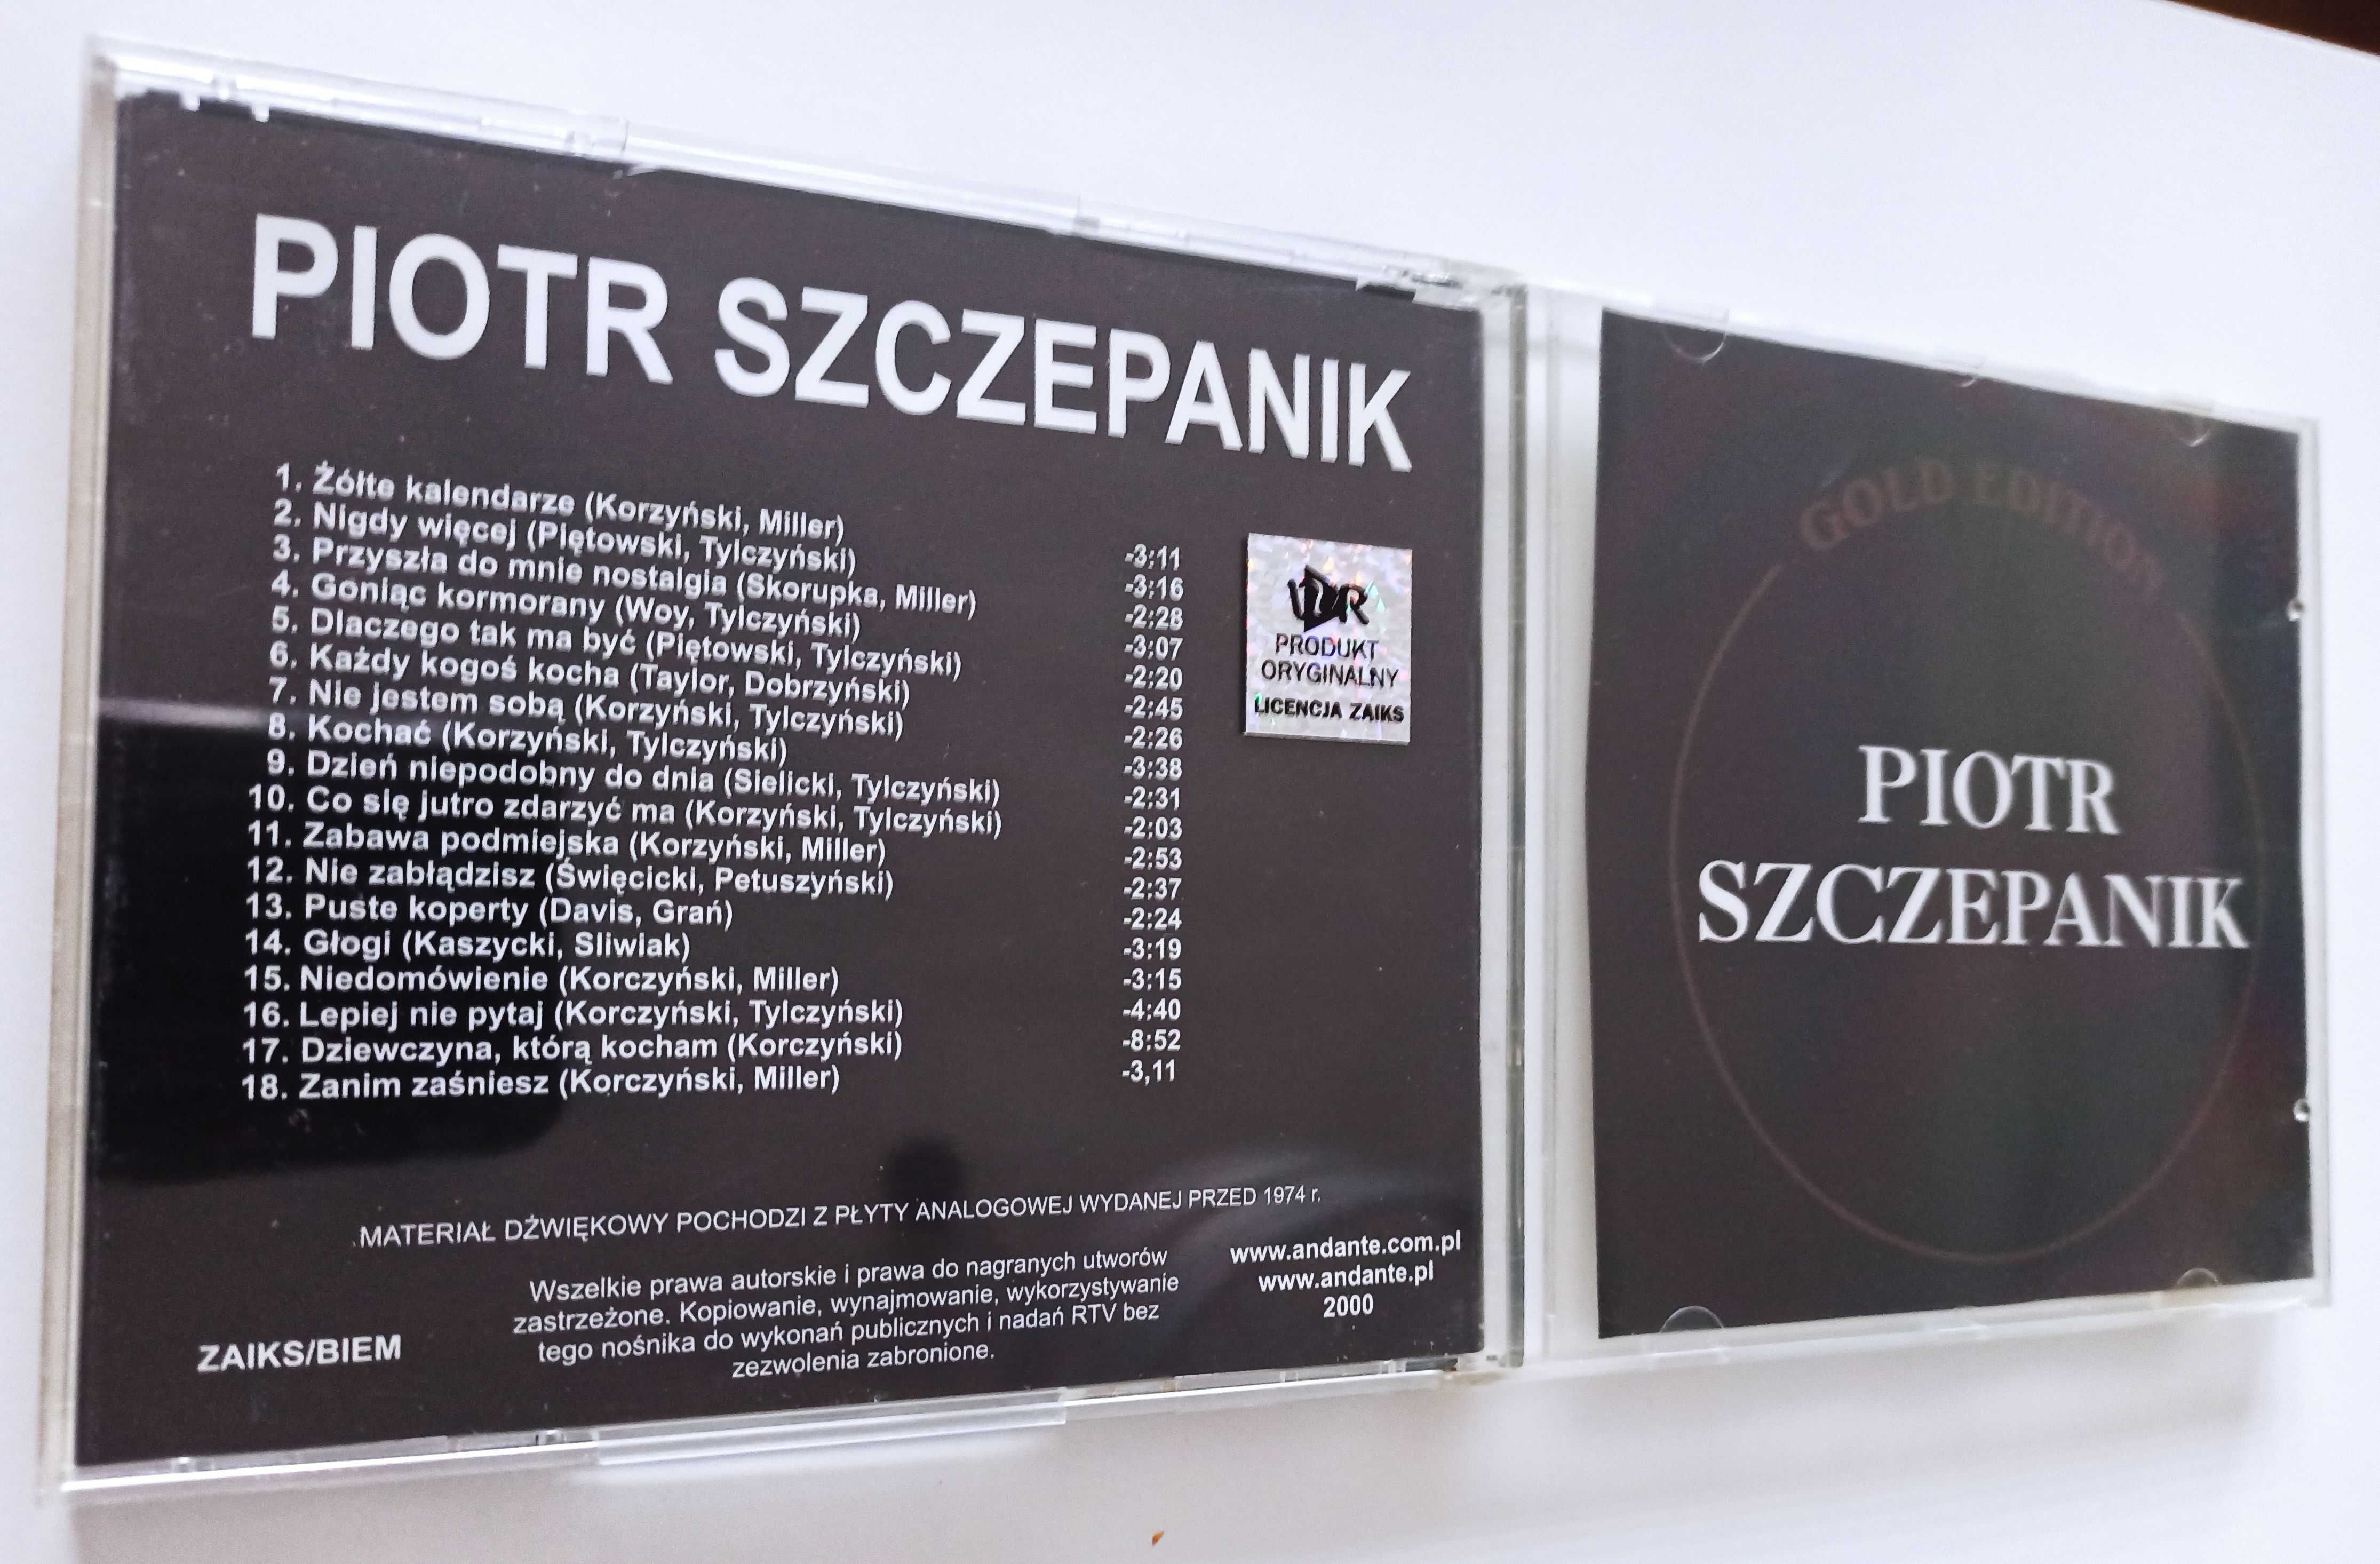 Piotr Szczepanik Złote przeboje Gold edition płyta CD 2000